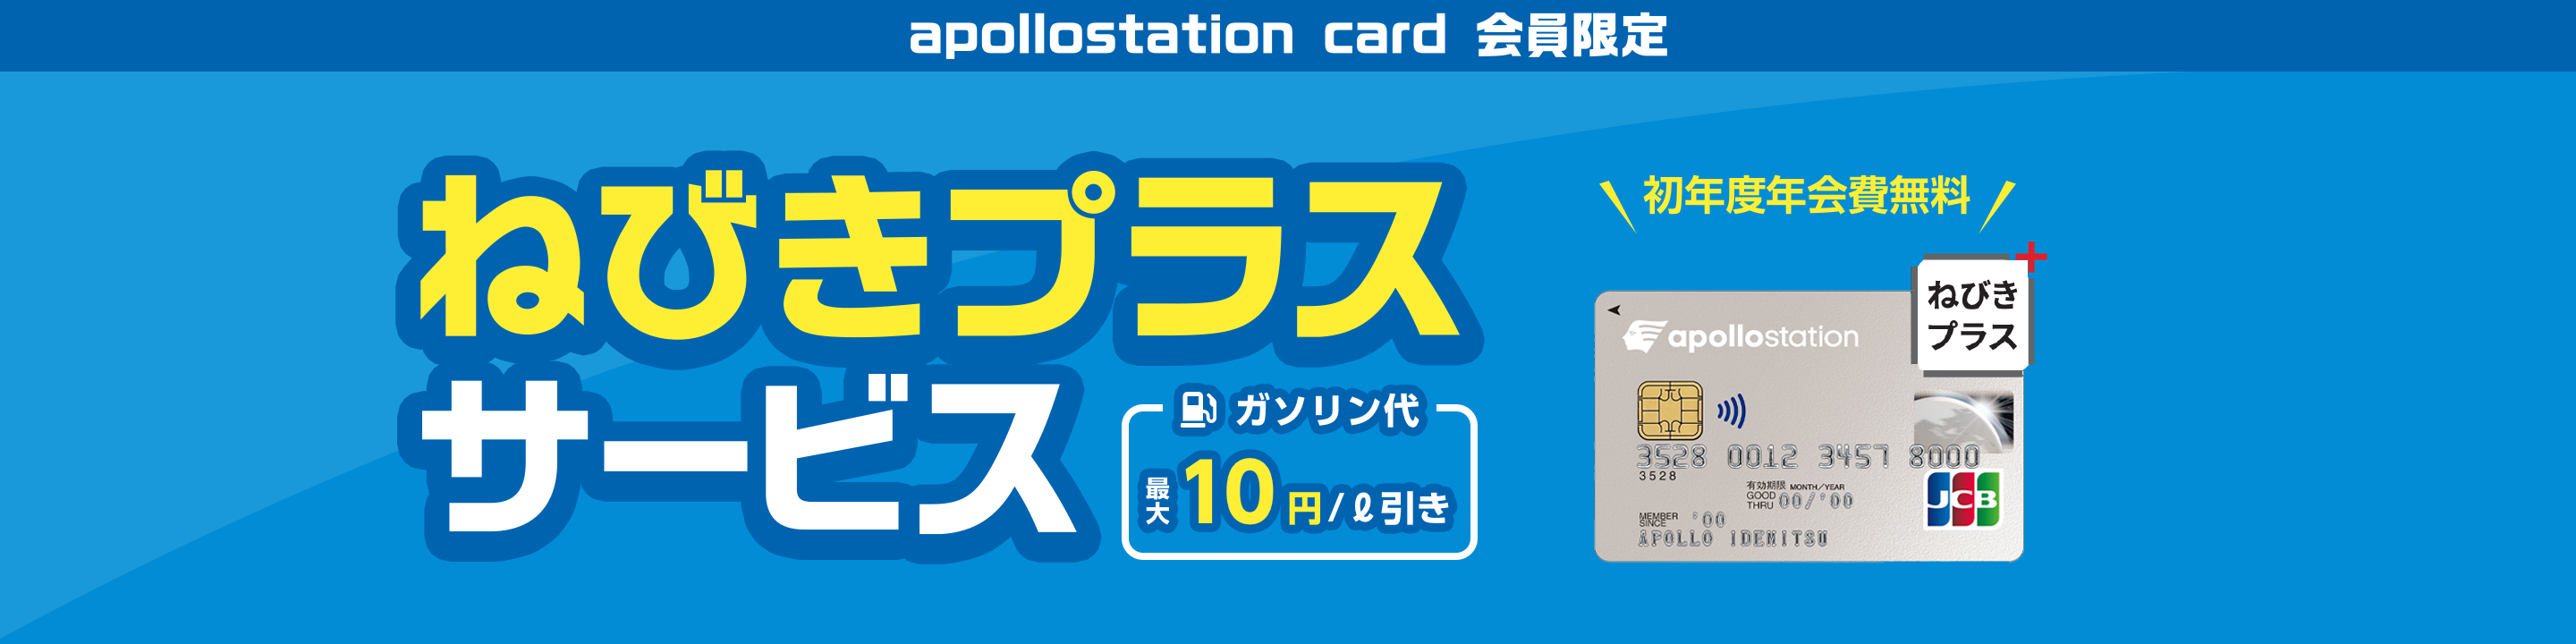 apollostation cardのねびきプラスサービスバナー